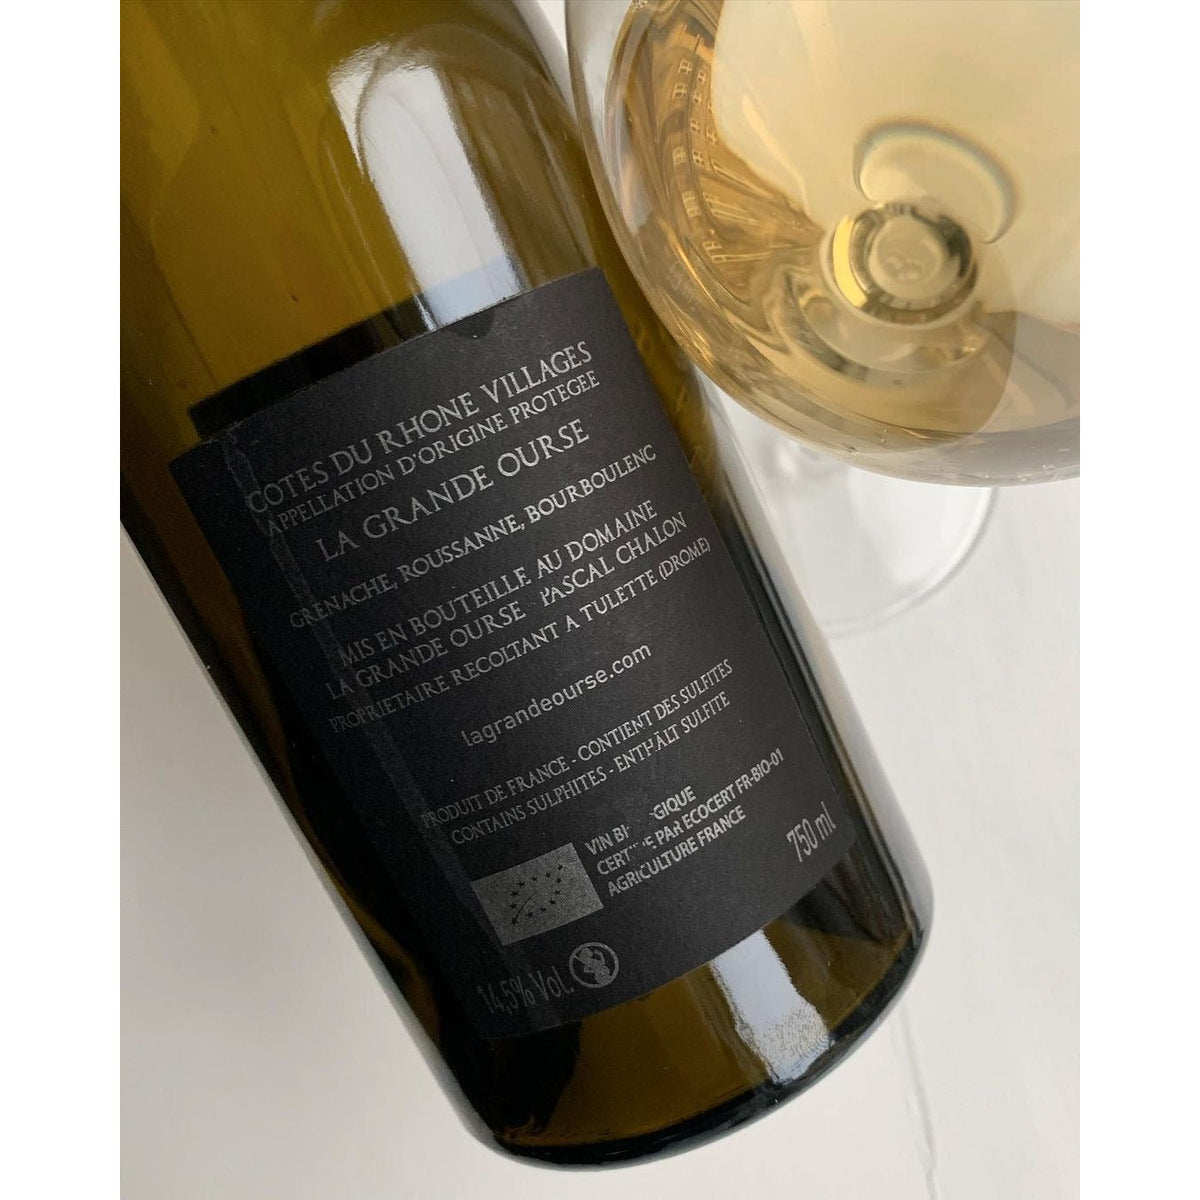 Bouteille de vin nature, vin blanc du Domaine La Grande Ourse en Côtes-du-Rhône : La grande ourse blanc. (image : 3 sur 3)